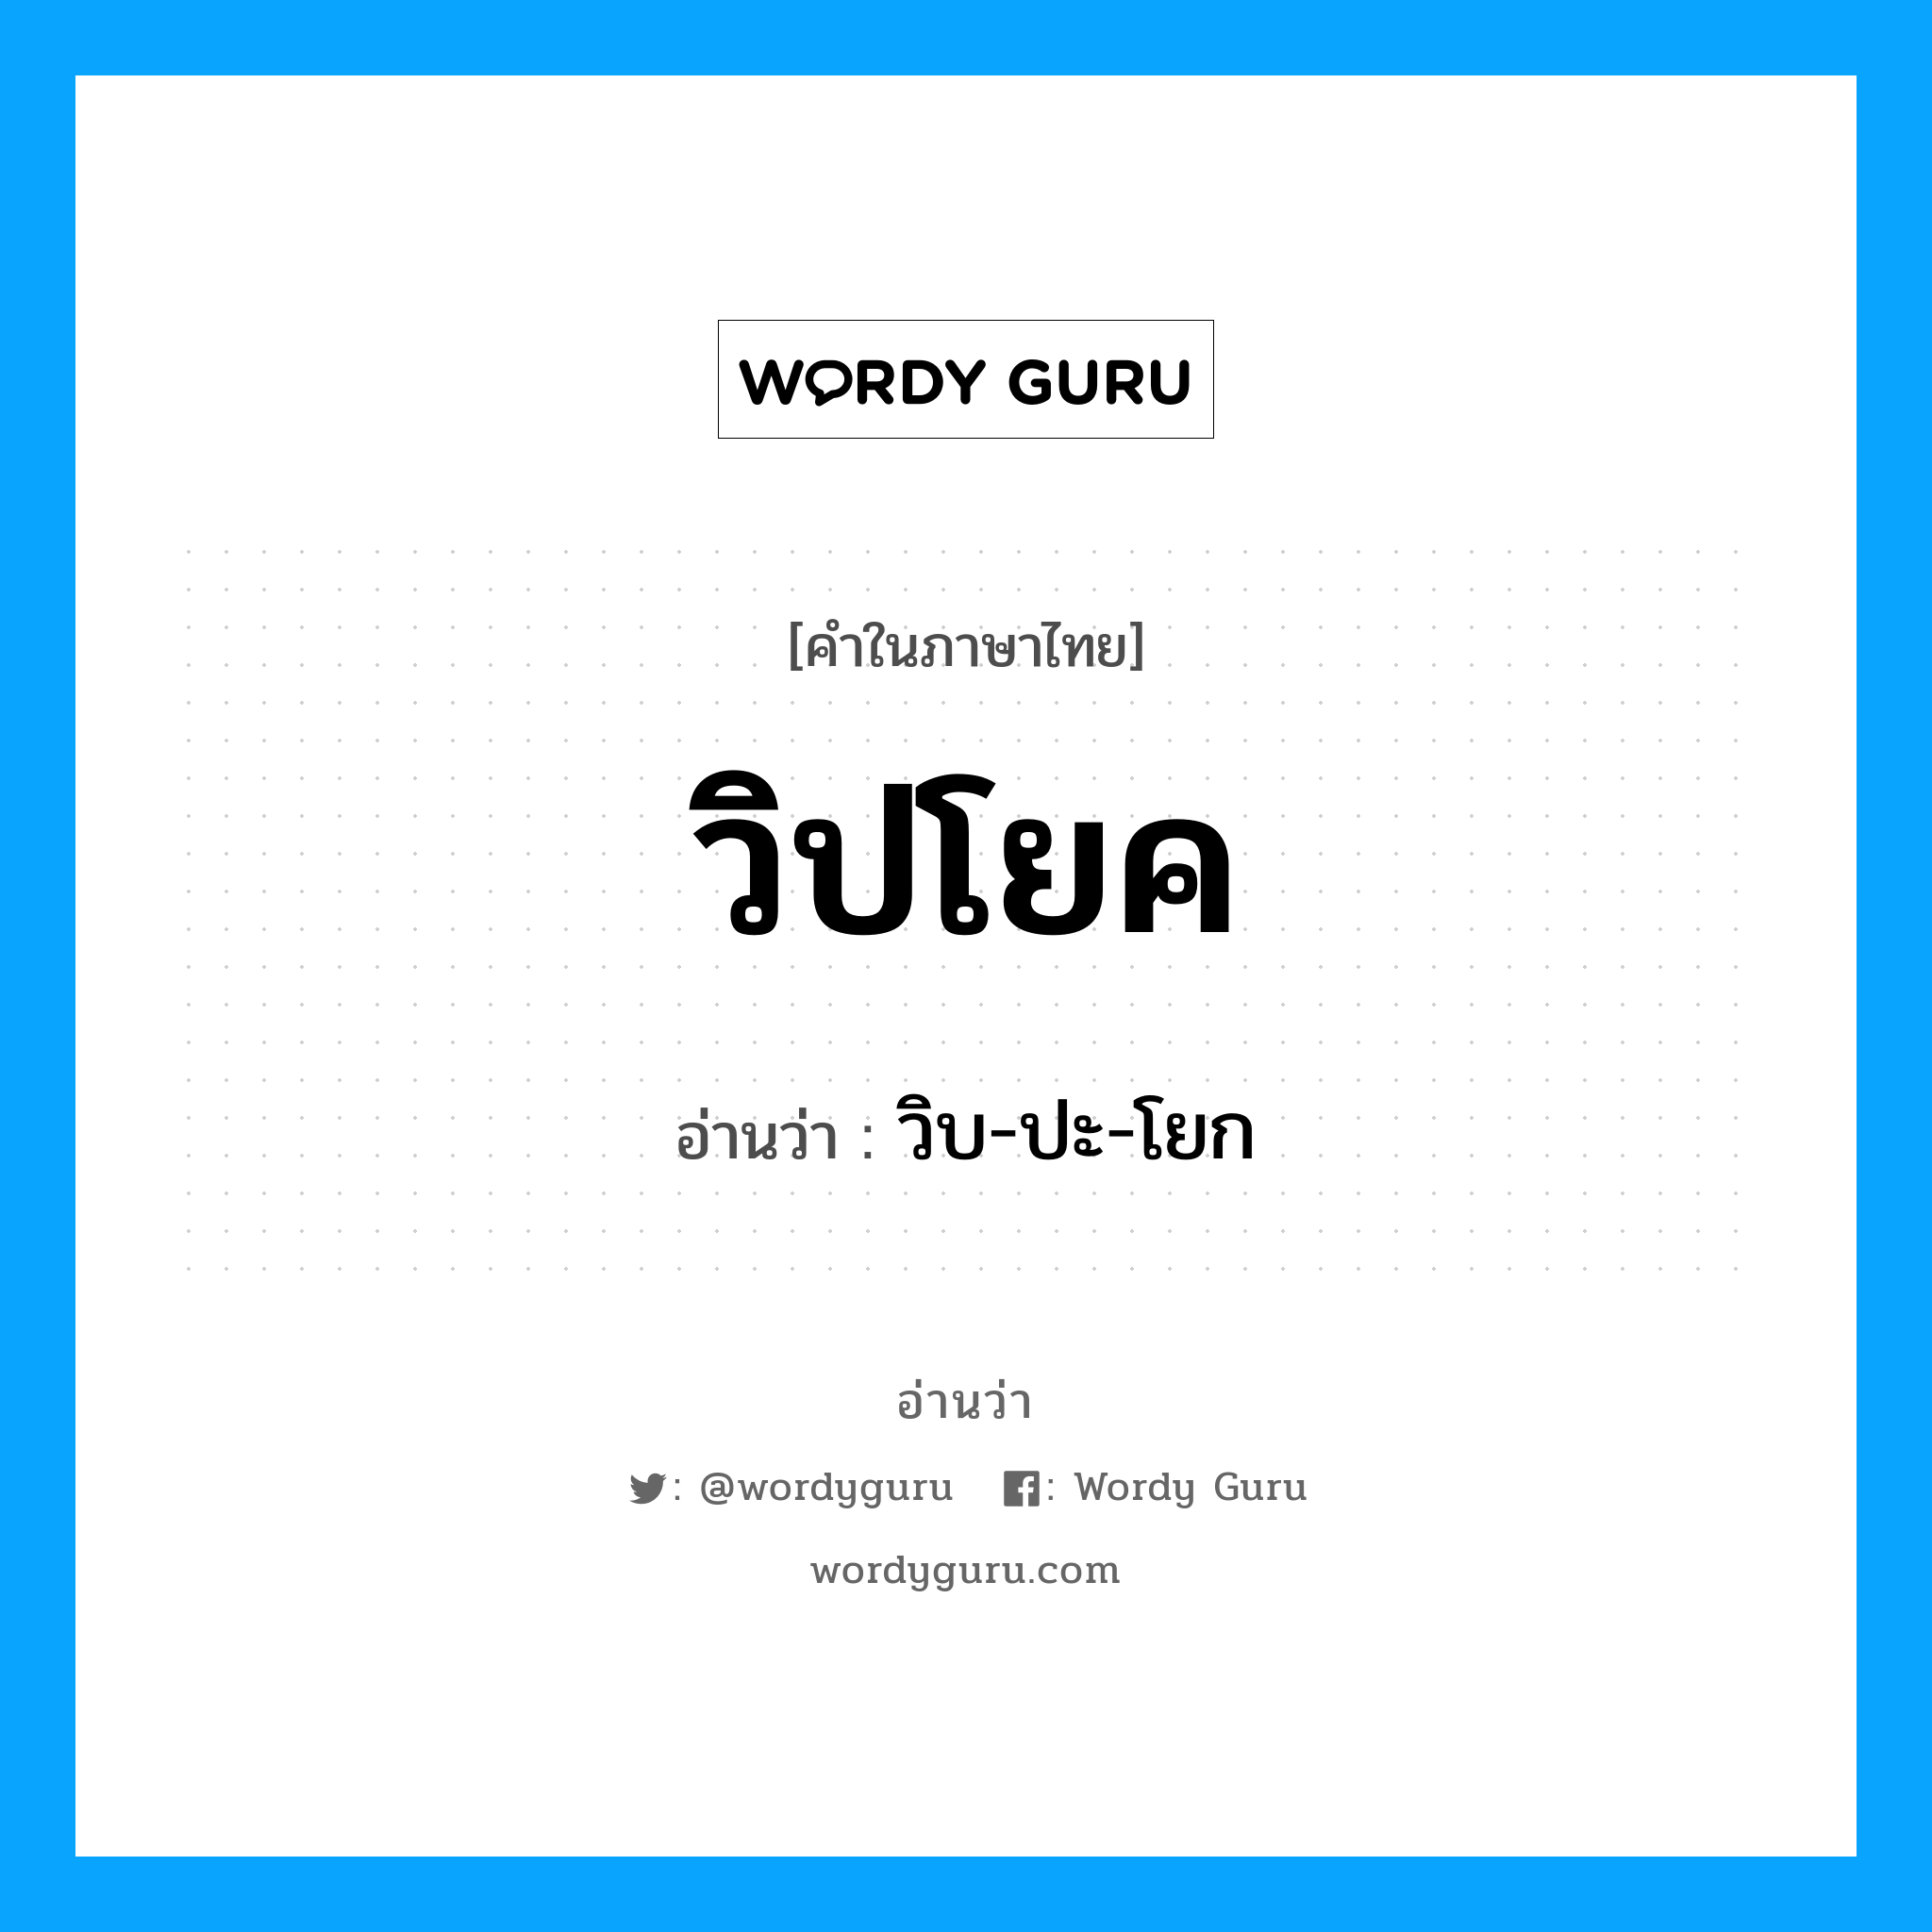 วิบ-ปะ-โยก เป็นคำอ่านของคำไหน?, คำในภาษาไทย วิบ-ปะ-โยก อ่านว่า วิปโยค